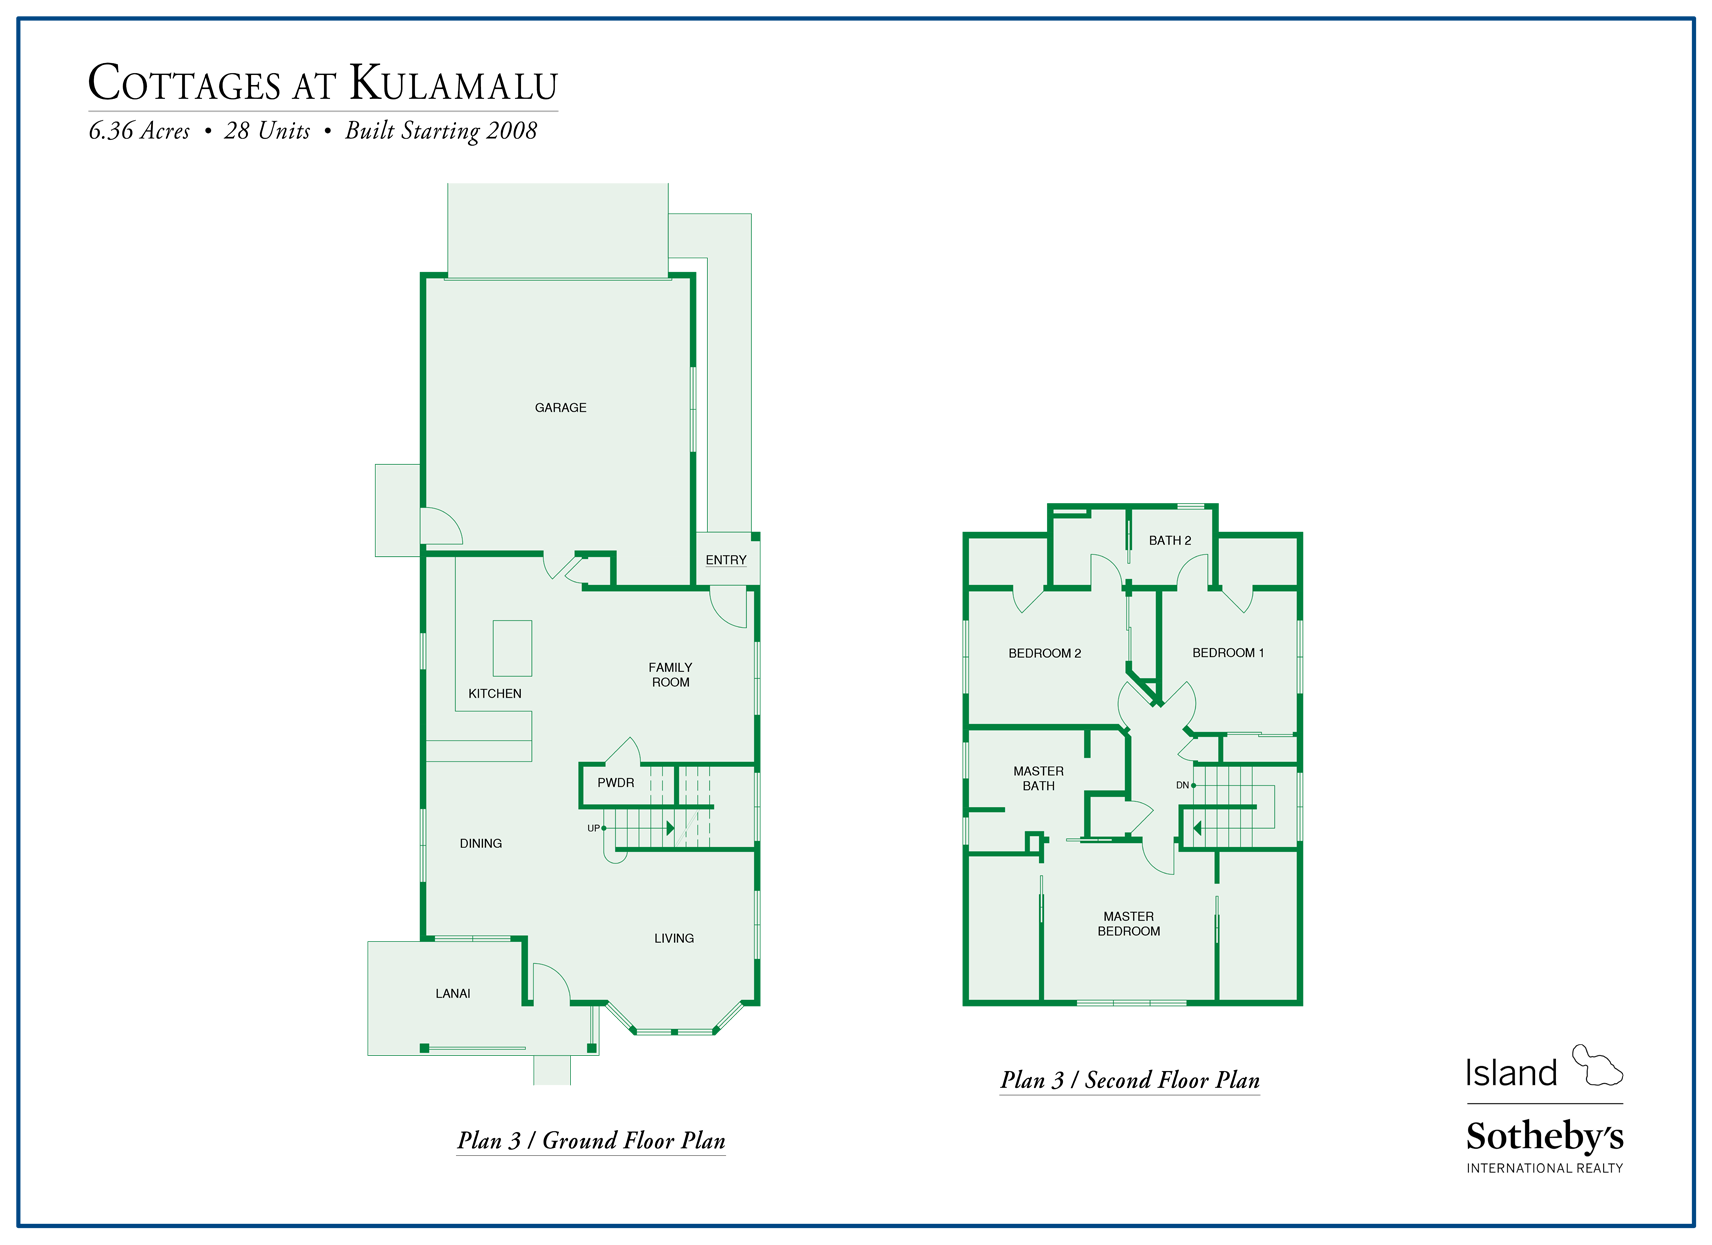 cottages at kulamalu floor plan 3